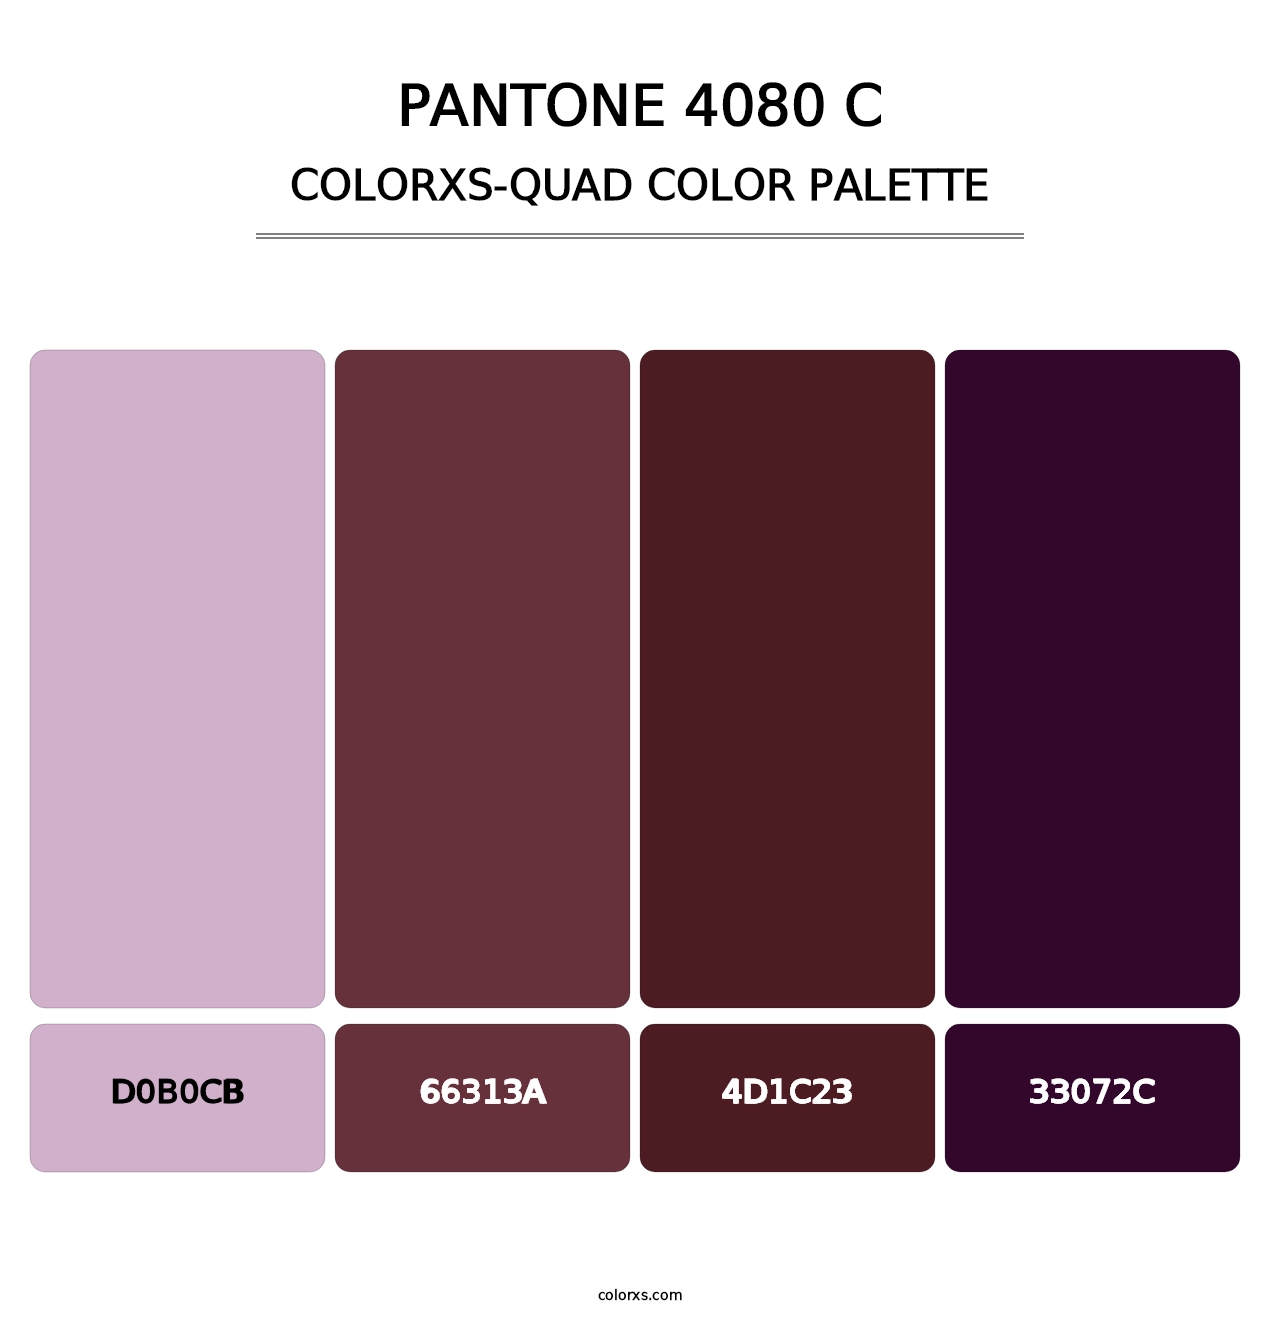 PANTONE 4080 C - Colorxs Quad Palette